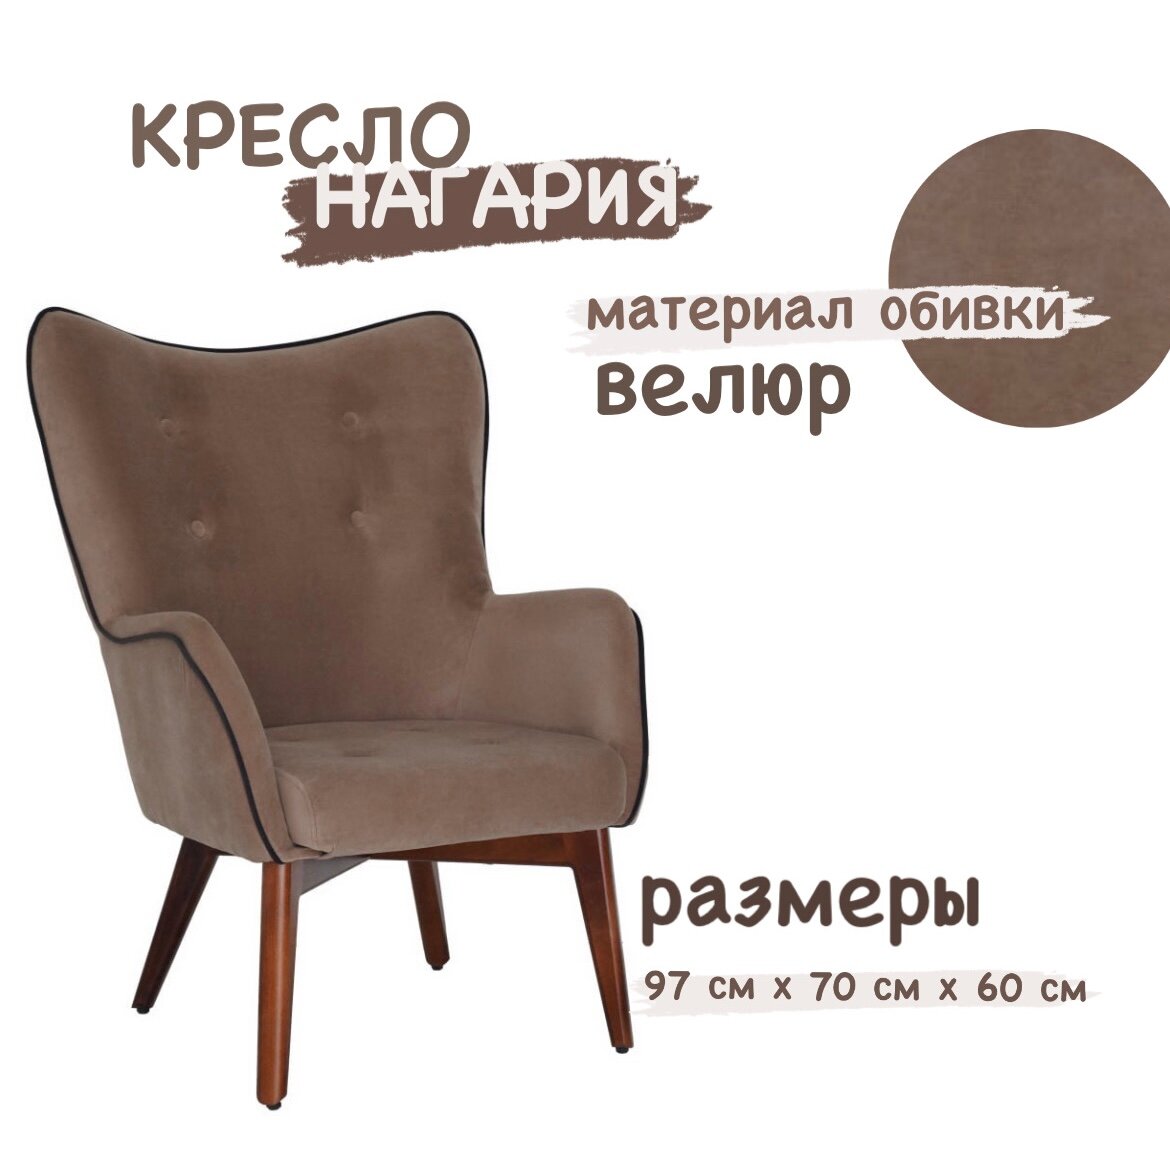 Кресло мягкое интерьерное Нагария ткань Ultra светло-коричневый